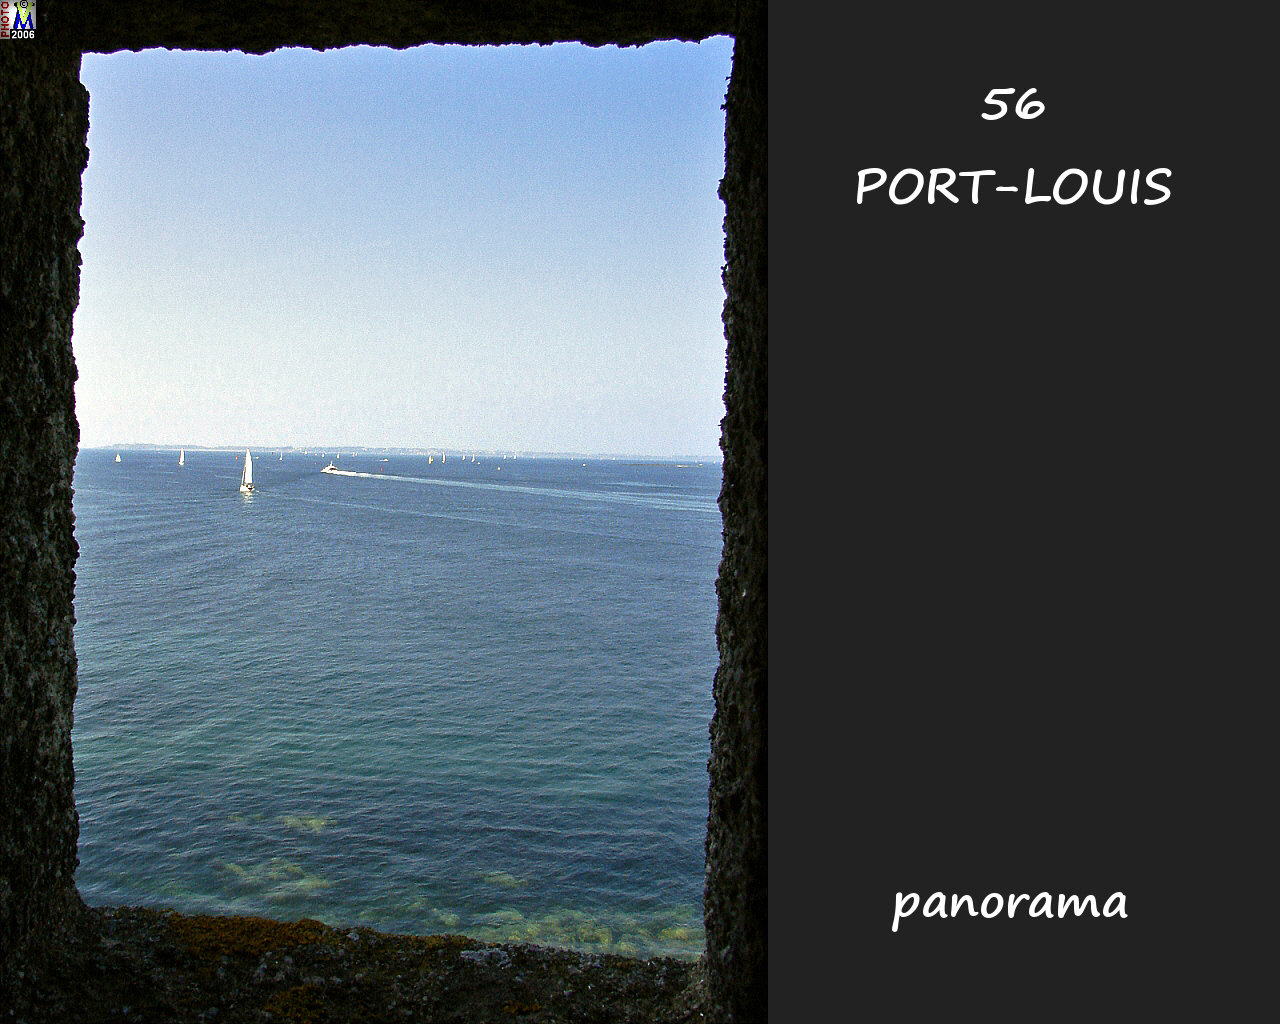 56PORT-LOUIS_panorama_120.jpg